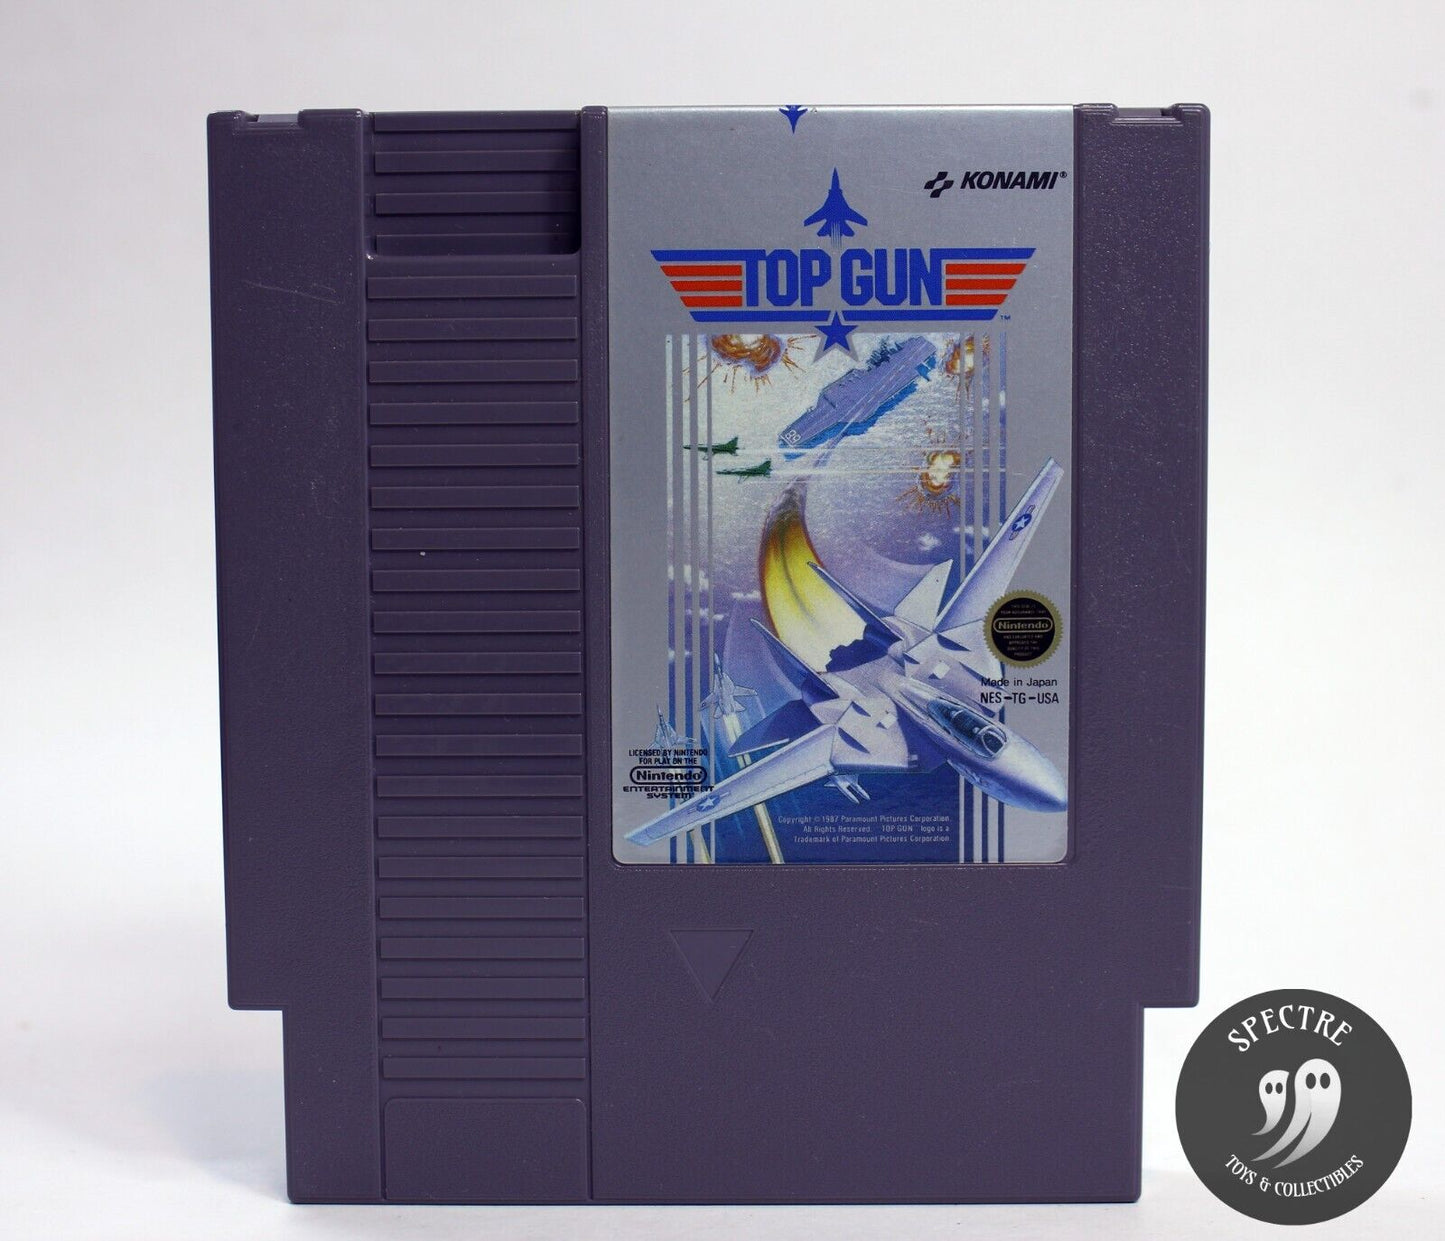 Top Gun (NES, 1987) U.S. Release